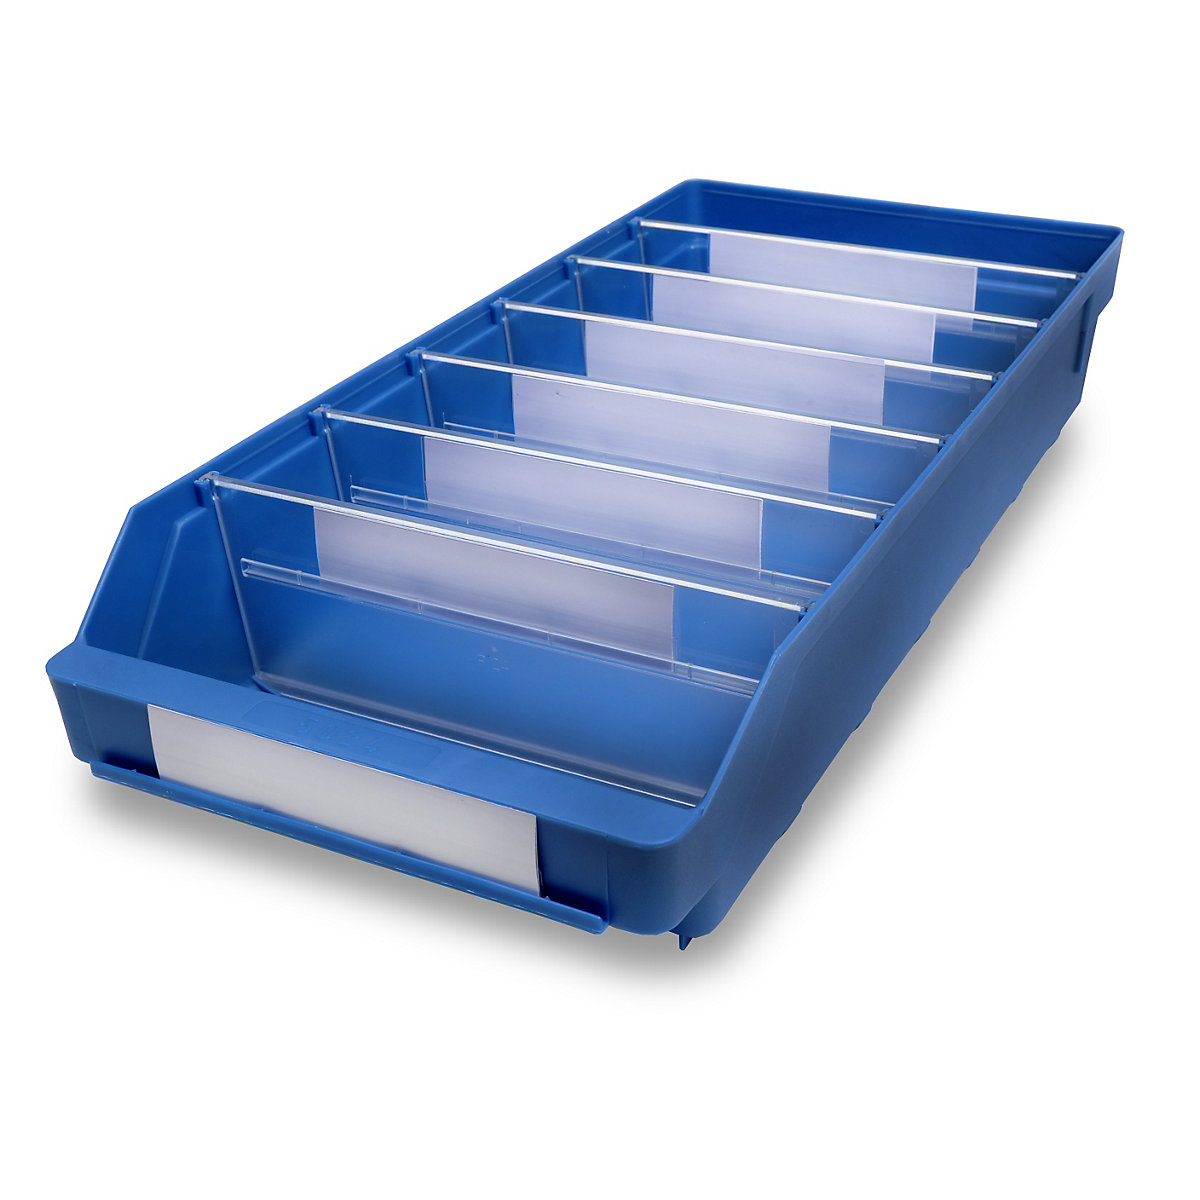 STEMO Regalkasten aus hochschlagfestem Polypropylen, blau, LxBxH 500 x 240 x 95 mm, VE 15 Stk